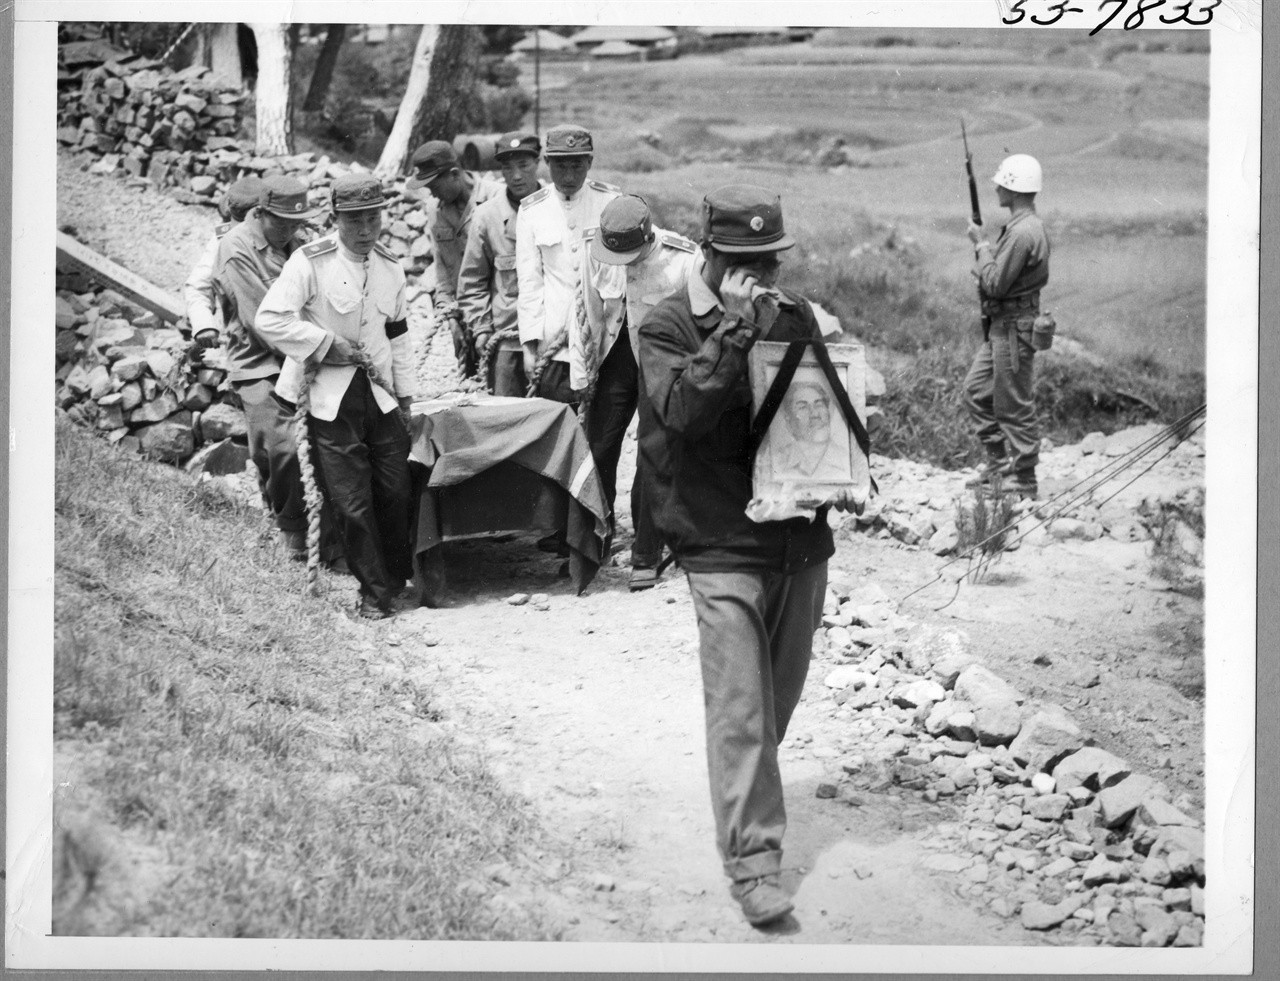  포로수용소 안에서 죽은 동료의 관을 포로수용소 밖 묘지로 운구하는 포로들. 